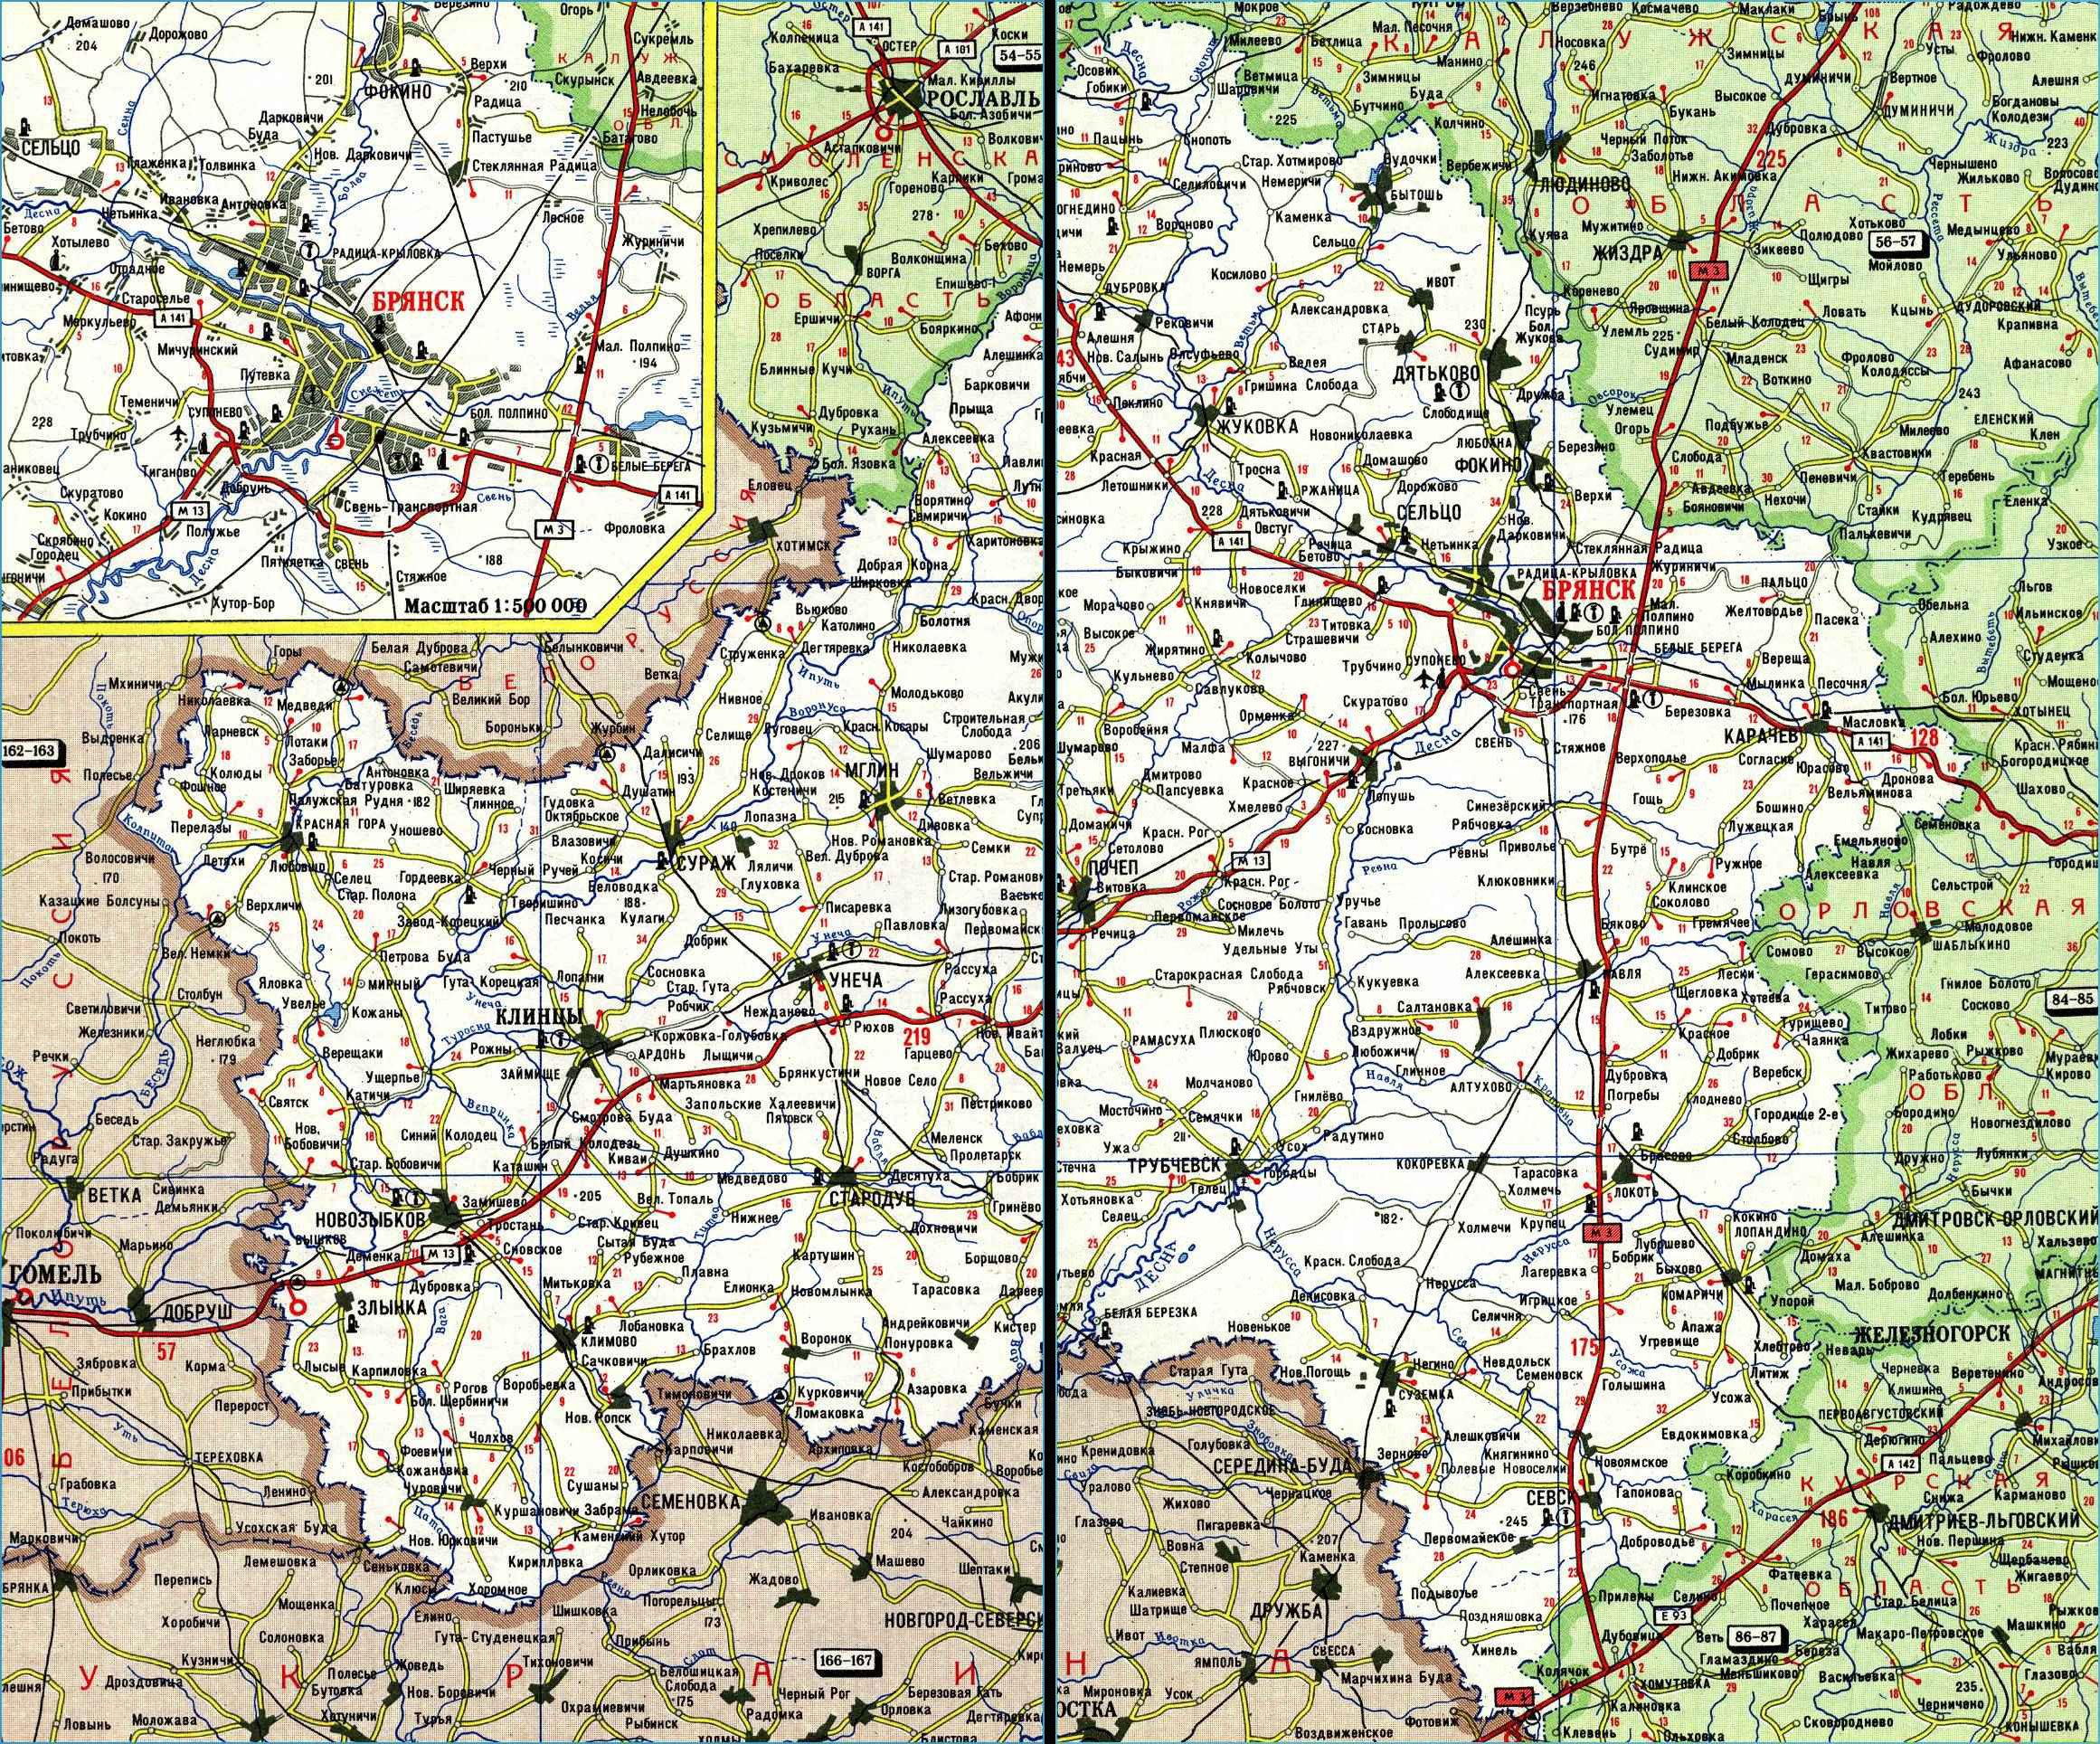 Подробная карта брянской области